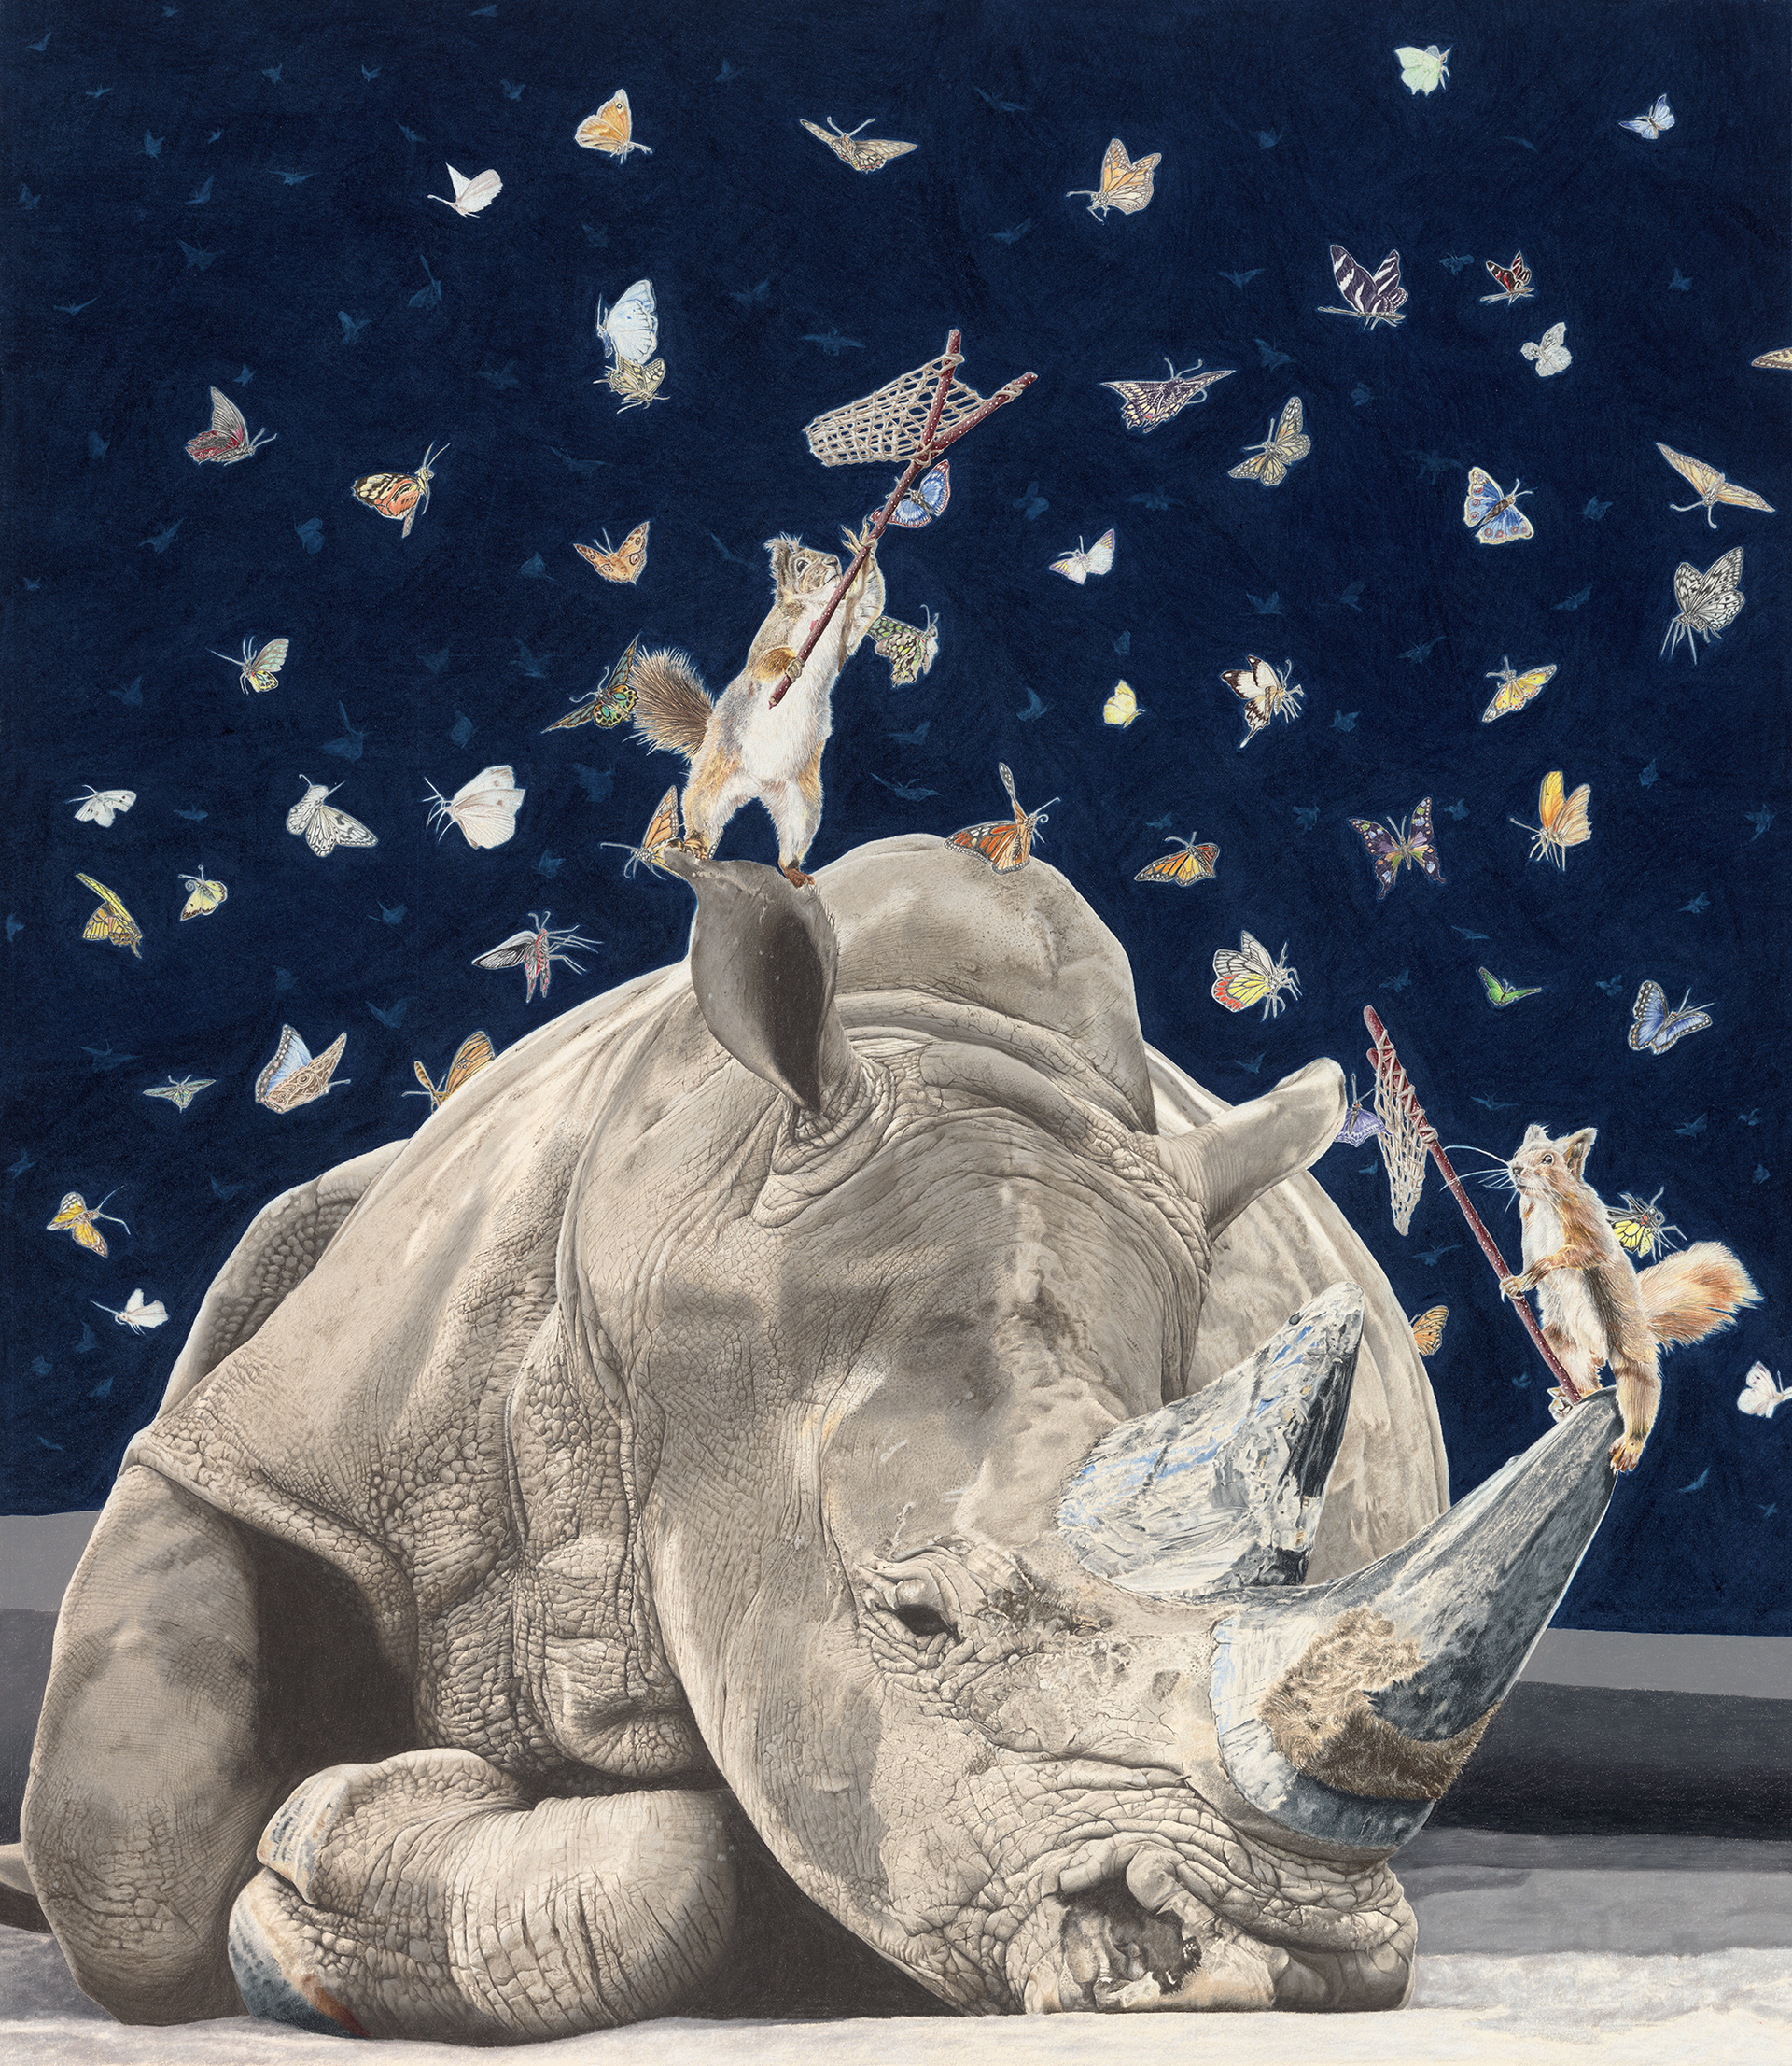 Lepidopterphobic Rhino by Paul Van Heest